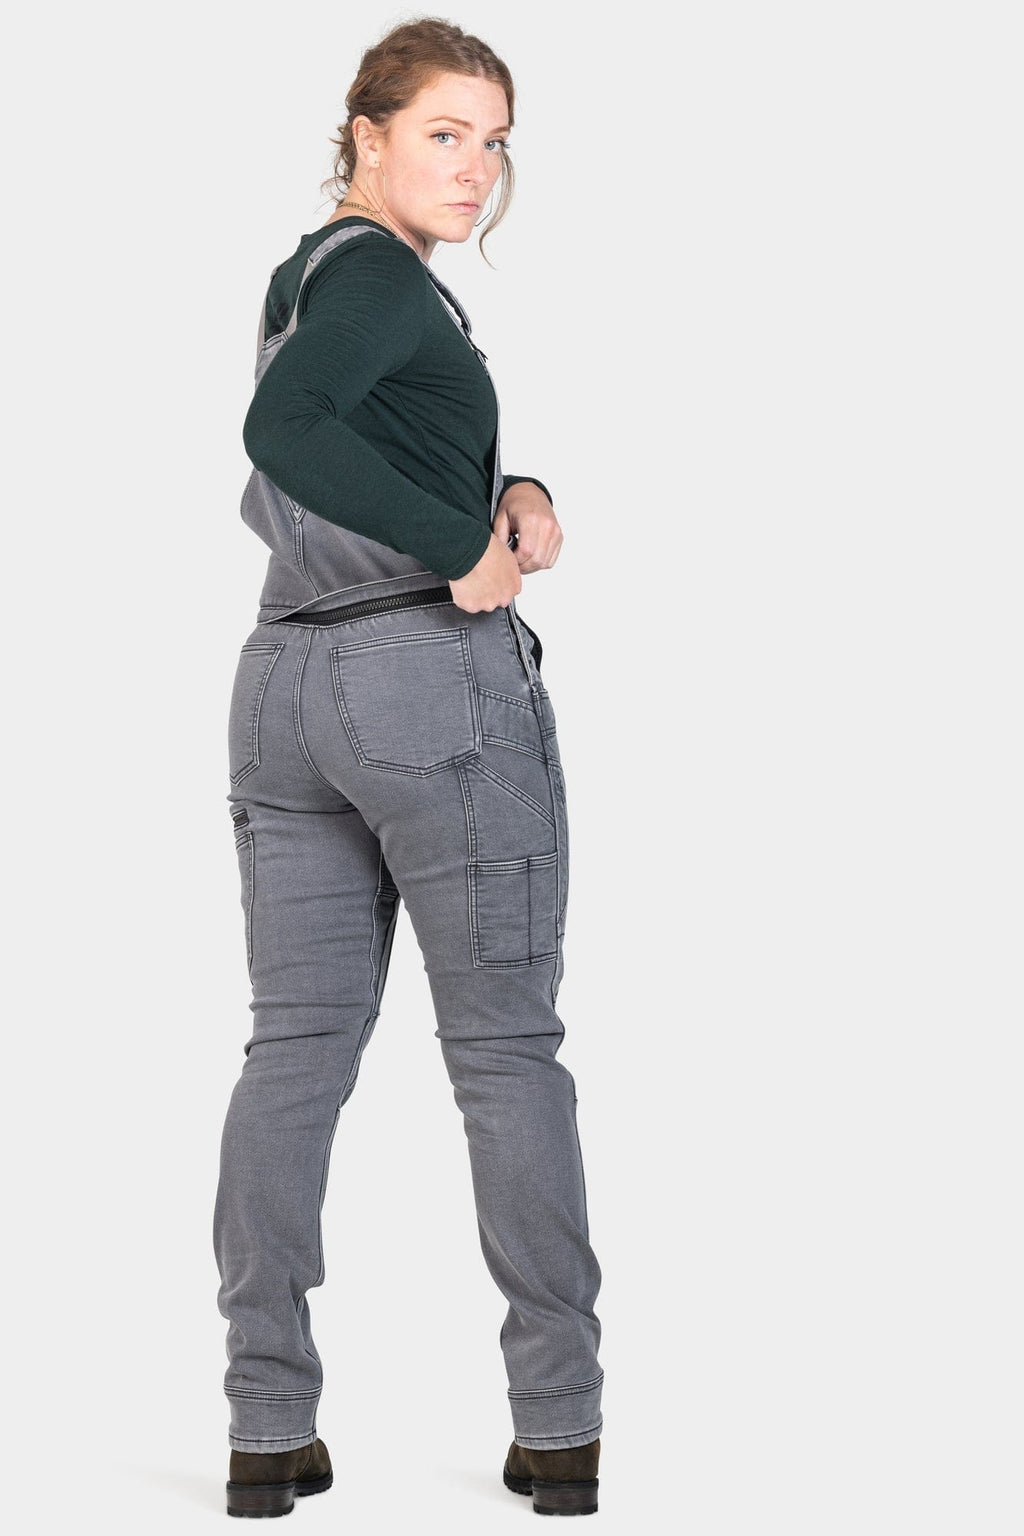 Buy Taped cuffed womens work pant by ELWD Workwear online - she wear